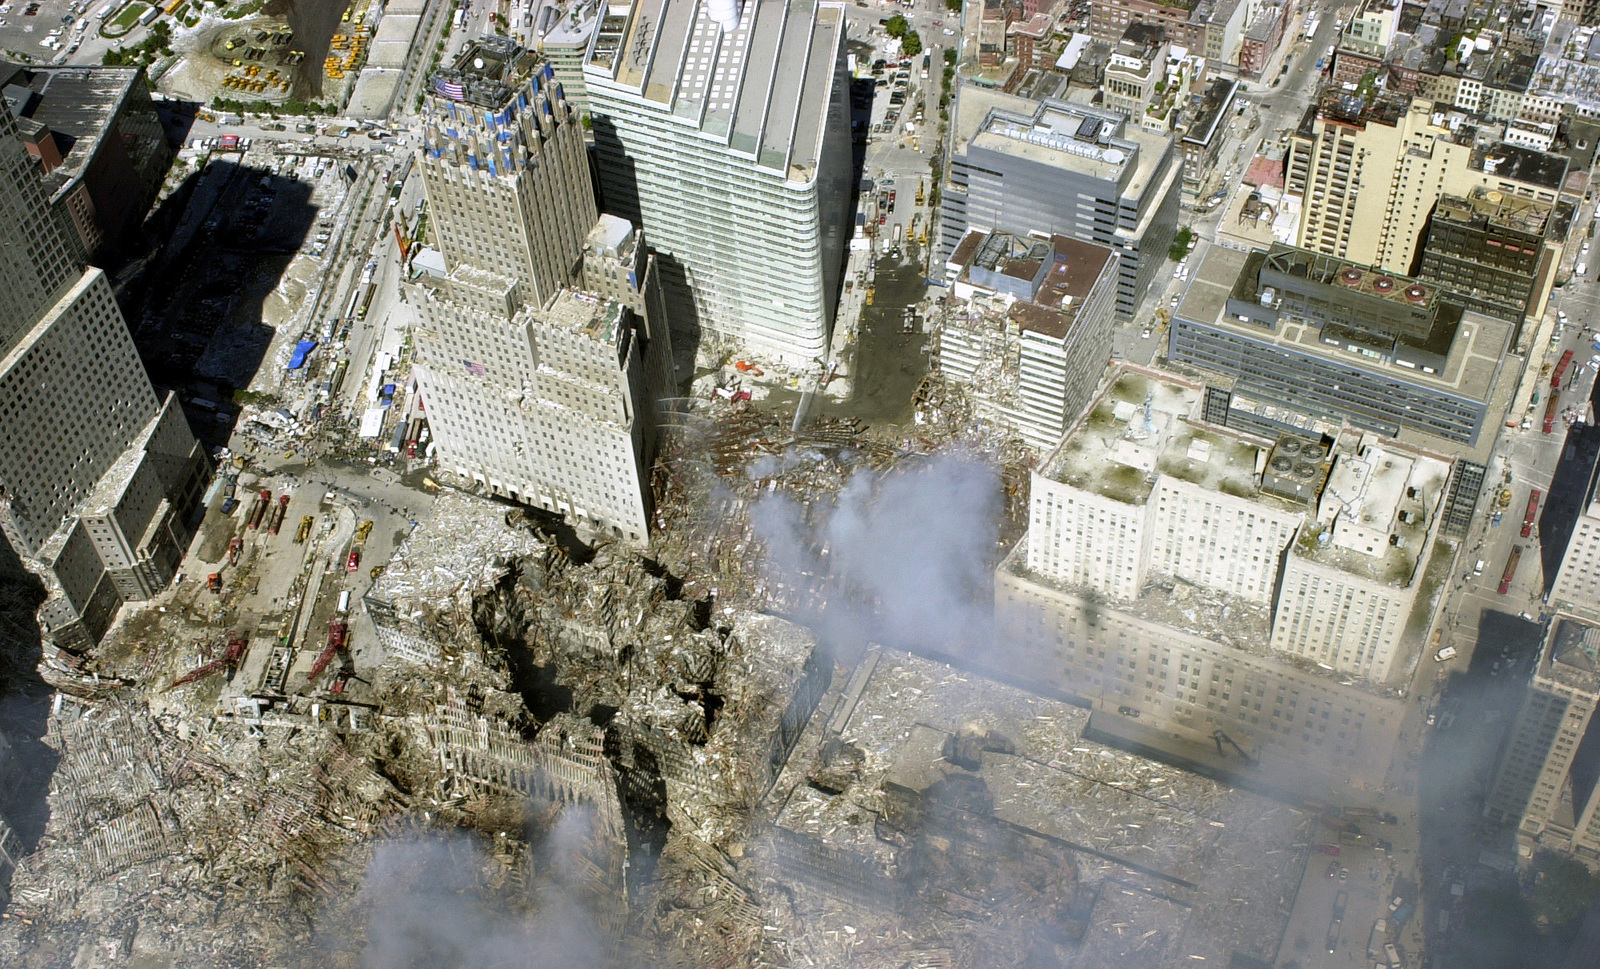 Сколько этажей было в башнях близнецах. Башни-Близнецы ВТЦ.. Торговый центр 9/11 башни Близнецы. ВТЦ 7 Нью-Йорк. ВТЦ Нью-Йорк башни Близнецы.